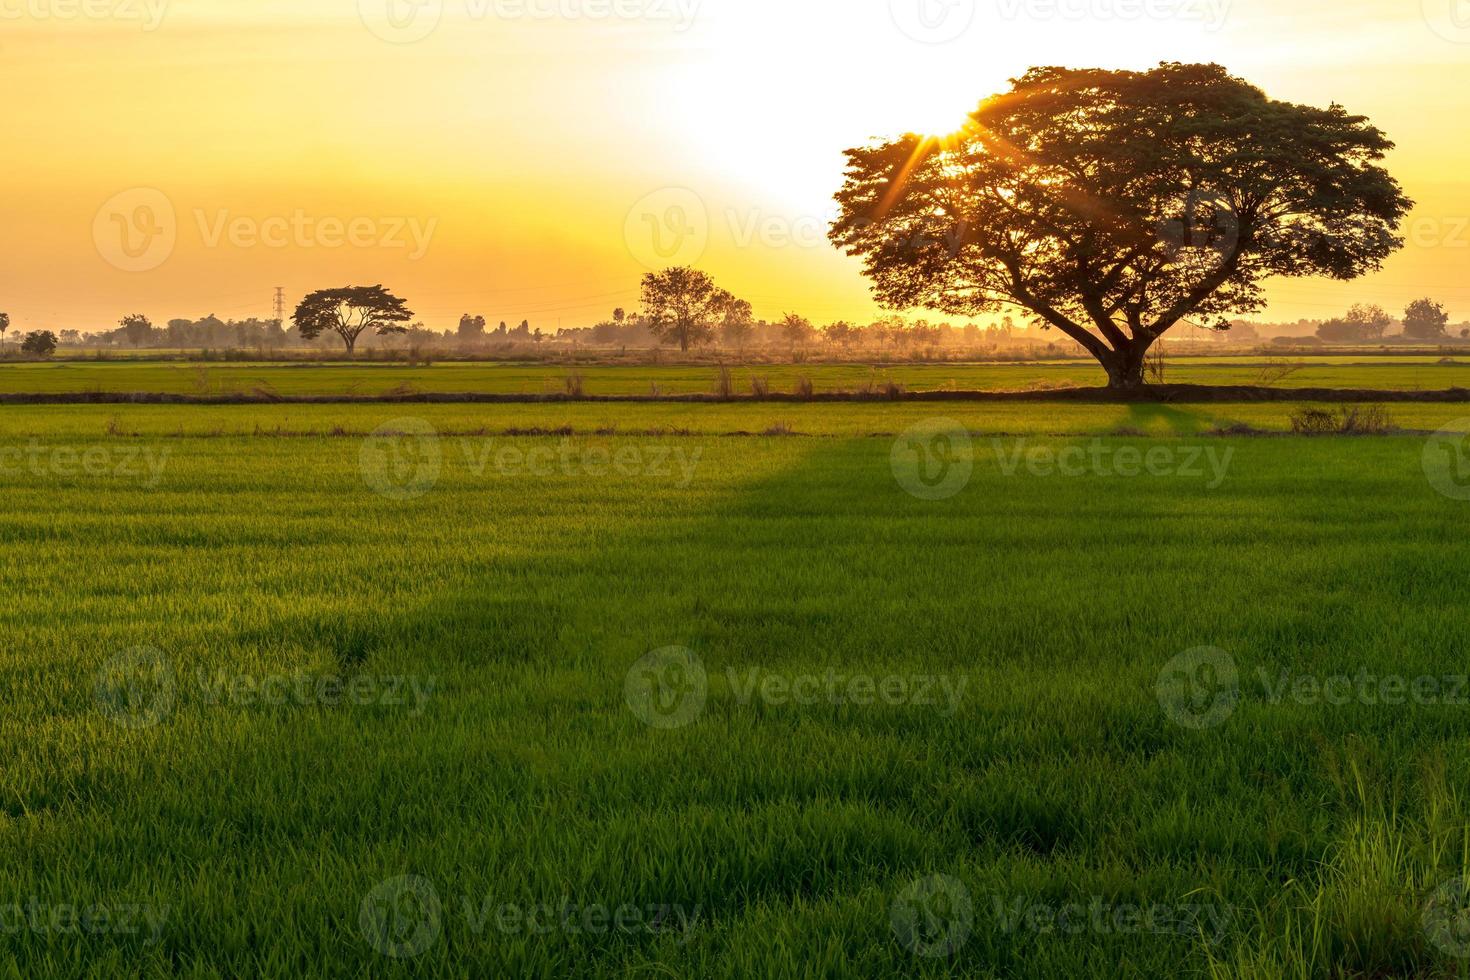 les arbres et le soleil tombent sur les rizières verdoyantes. photo